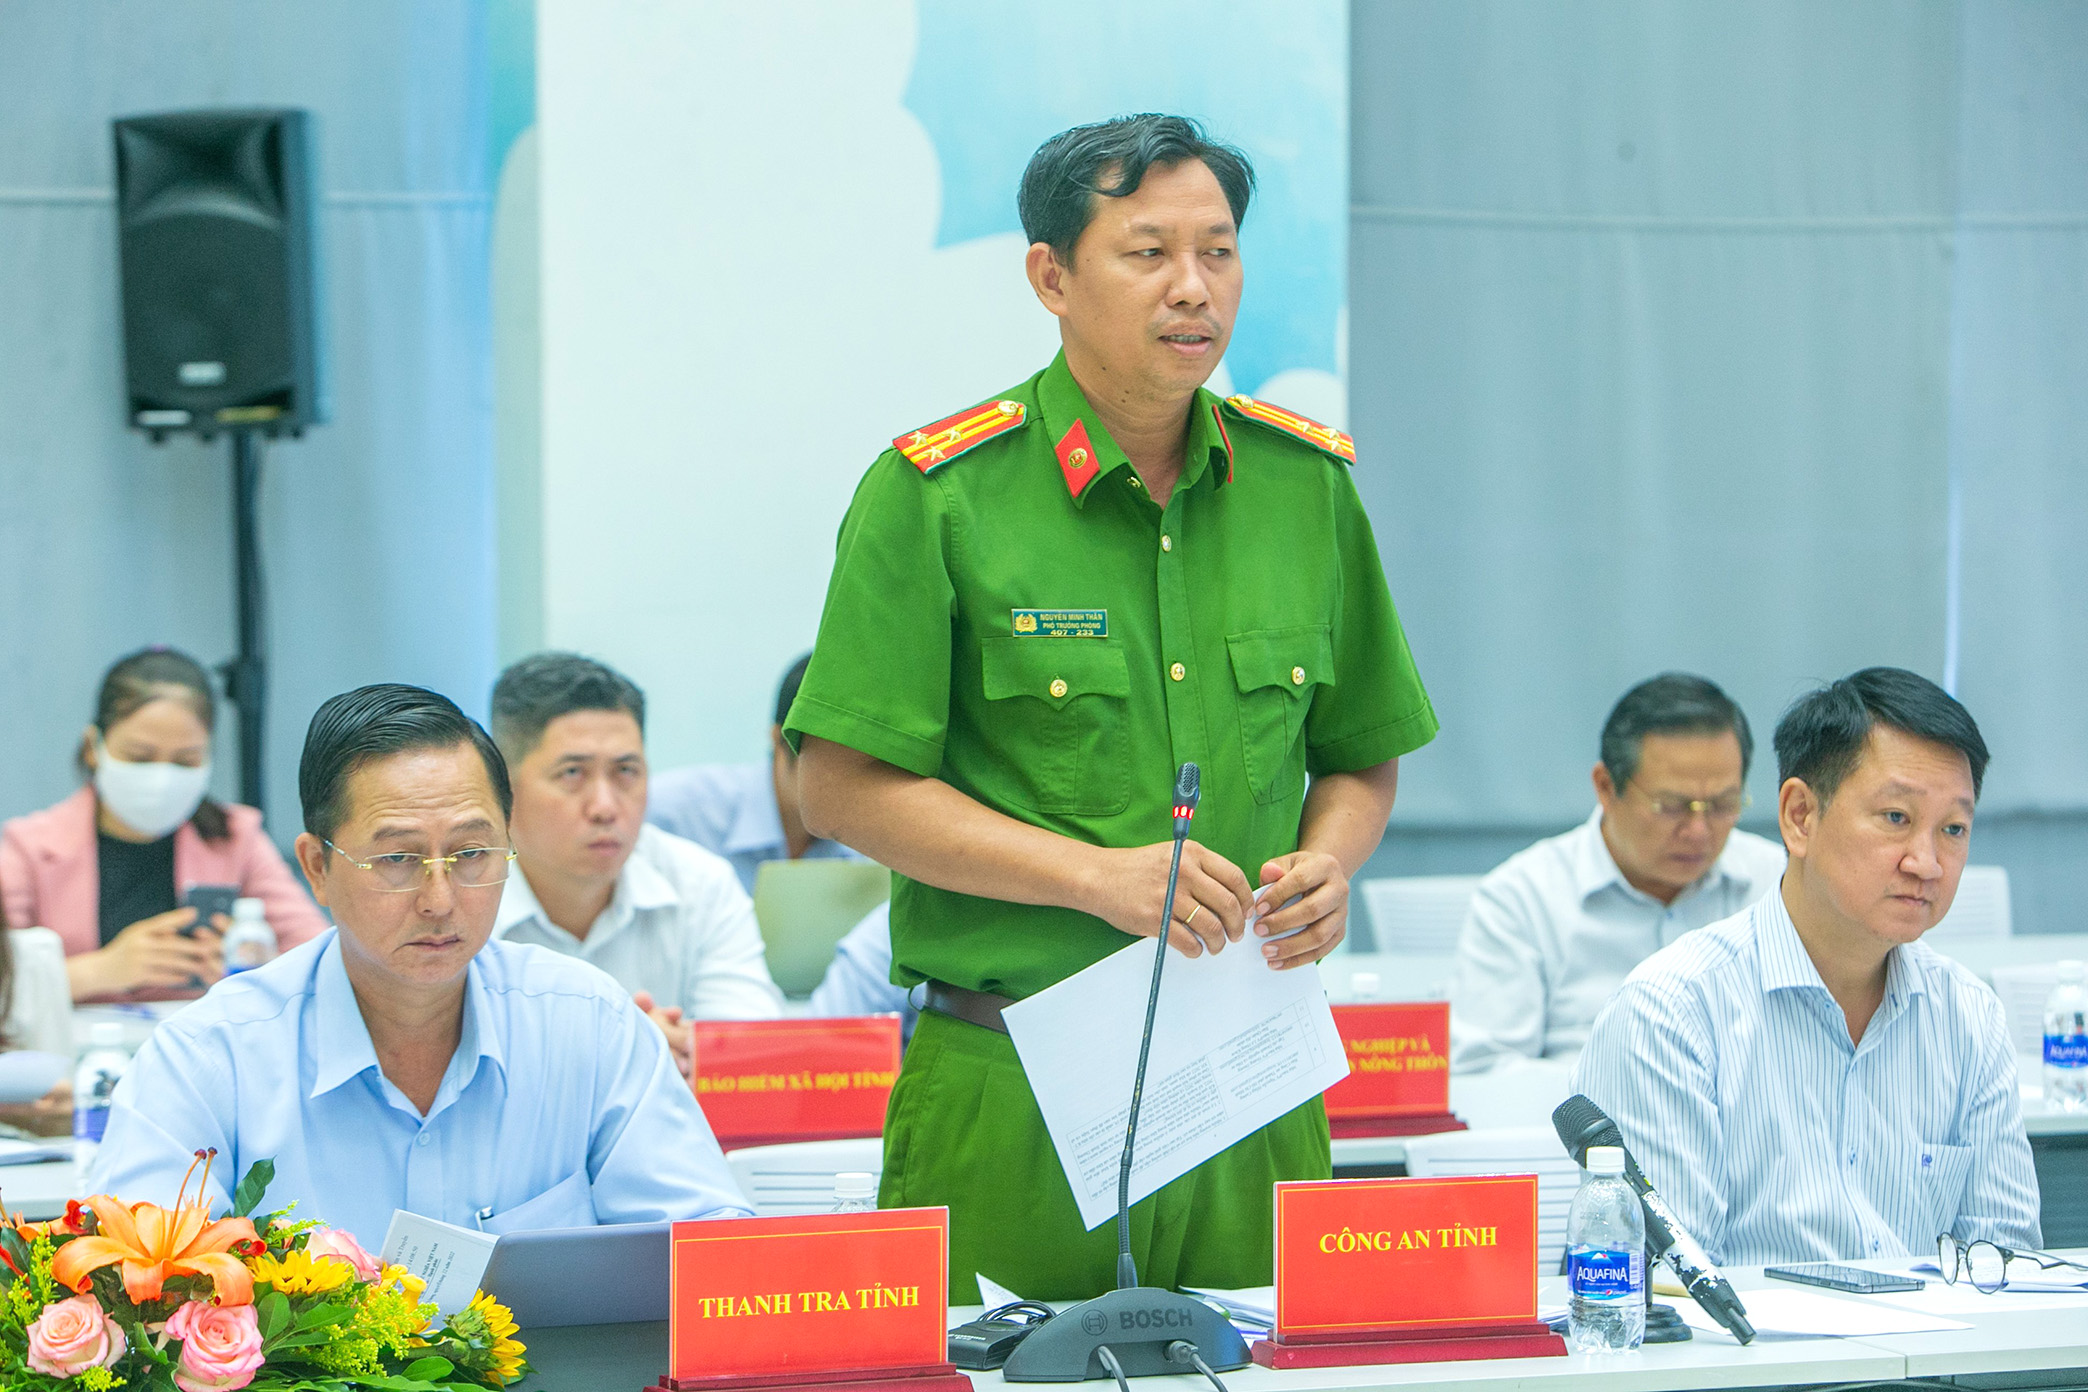 Đồng chí Nguyễn Minh Thân, đại diện Công an tỉnh Bình Dương trả lới báo chí tại họp báo.